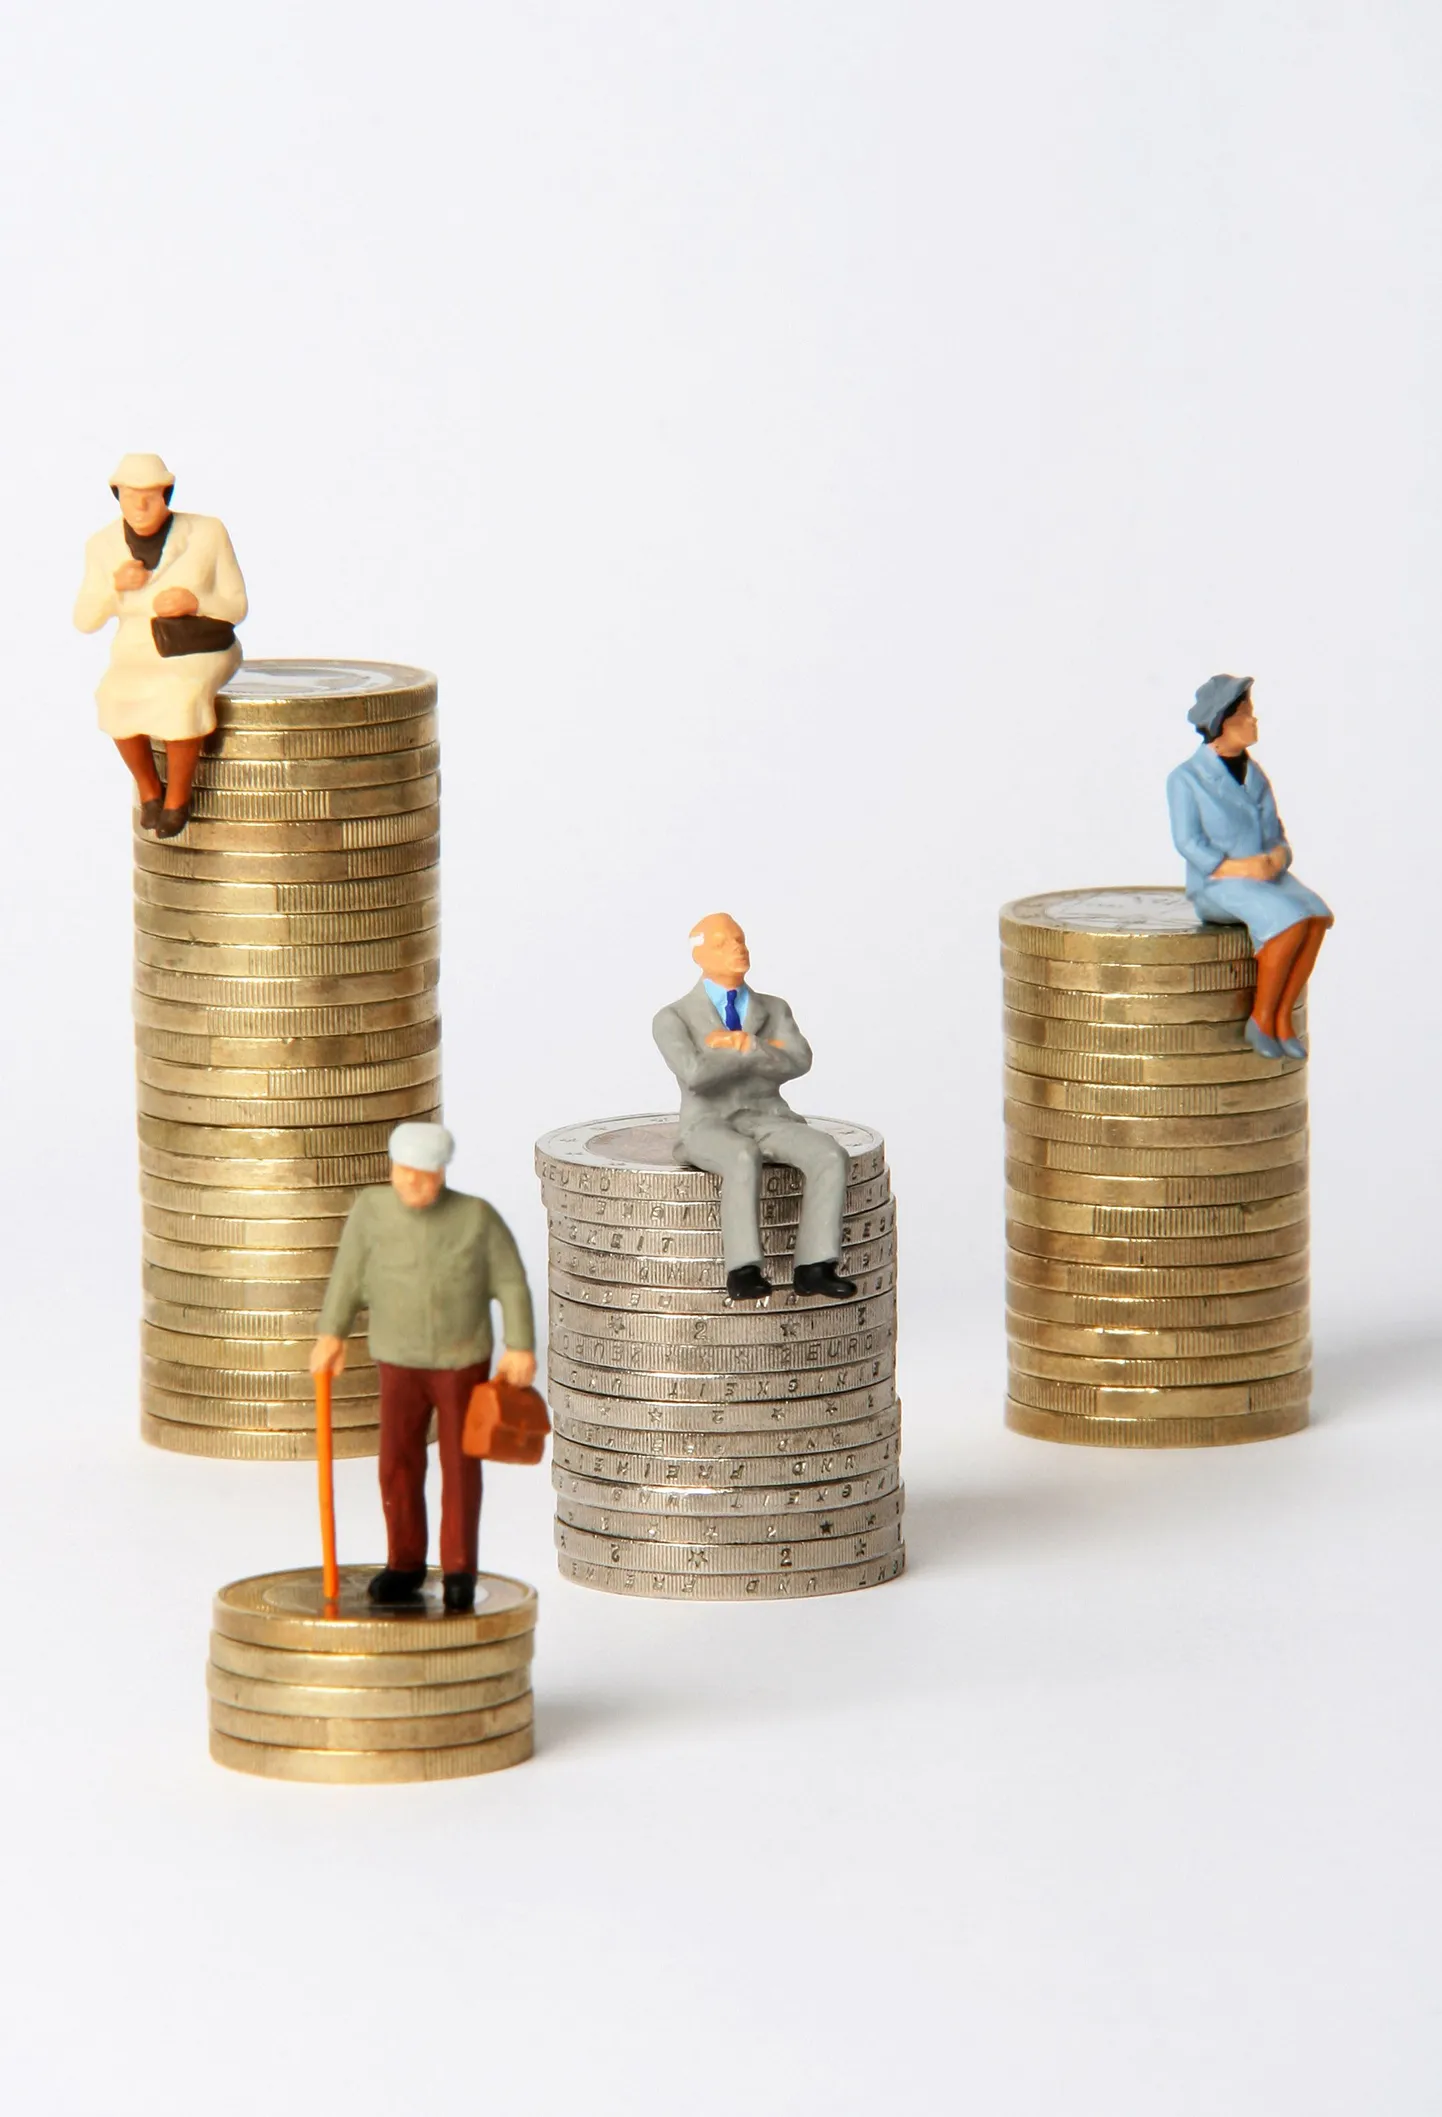 Pensionisüsteemi muudatused peavad tagama piisava sissetuleku, kuhu ei kandu üle praegune palkade suur erinevus.